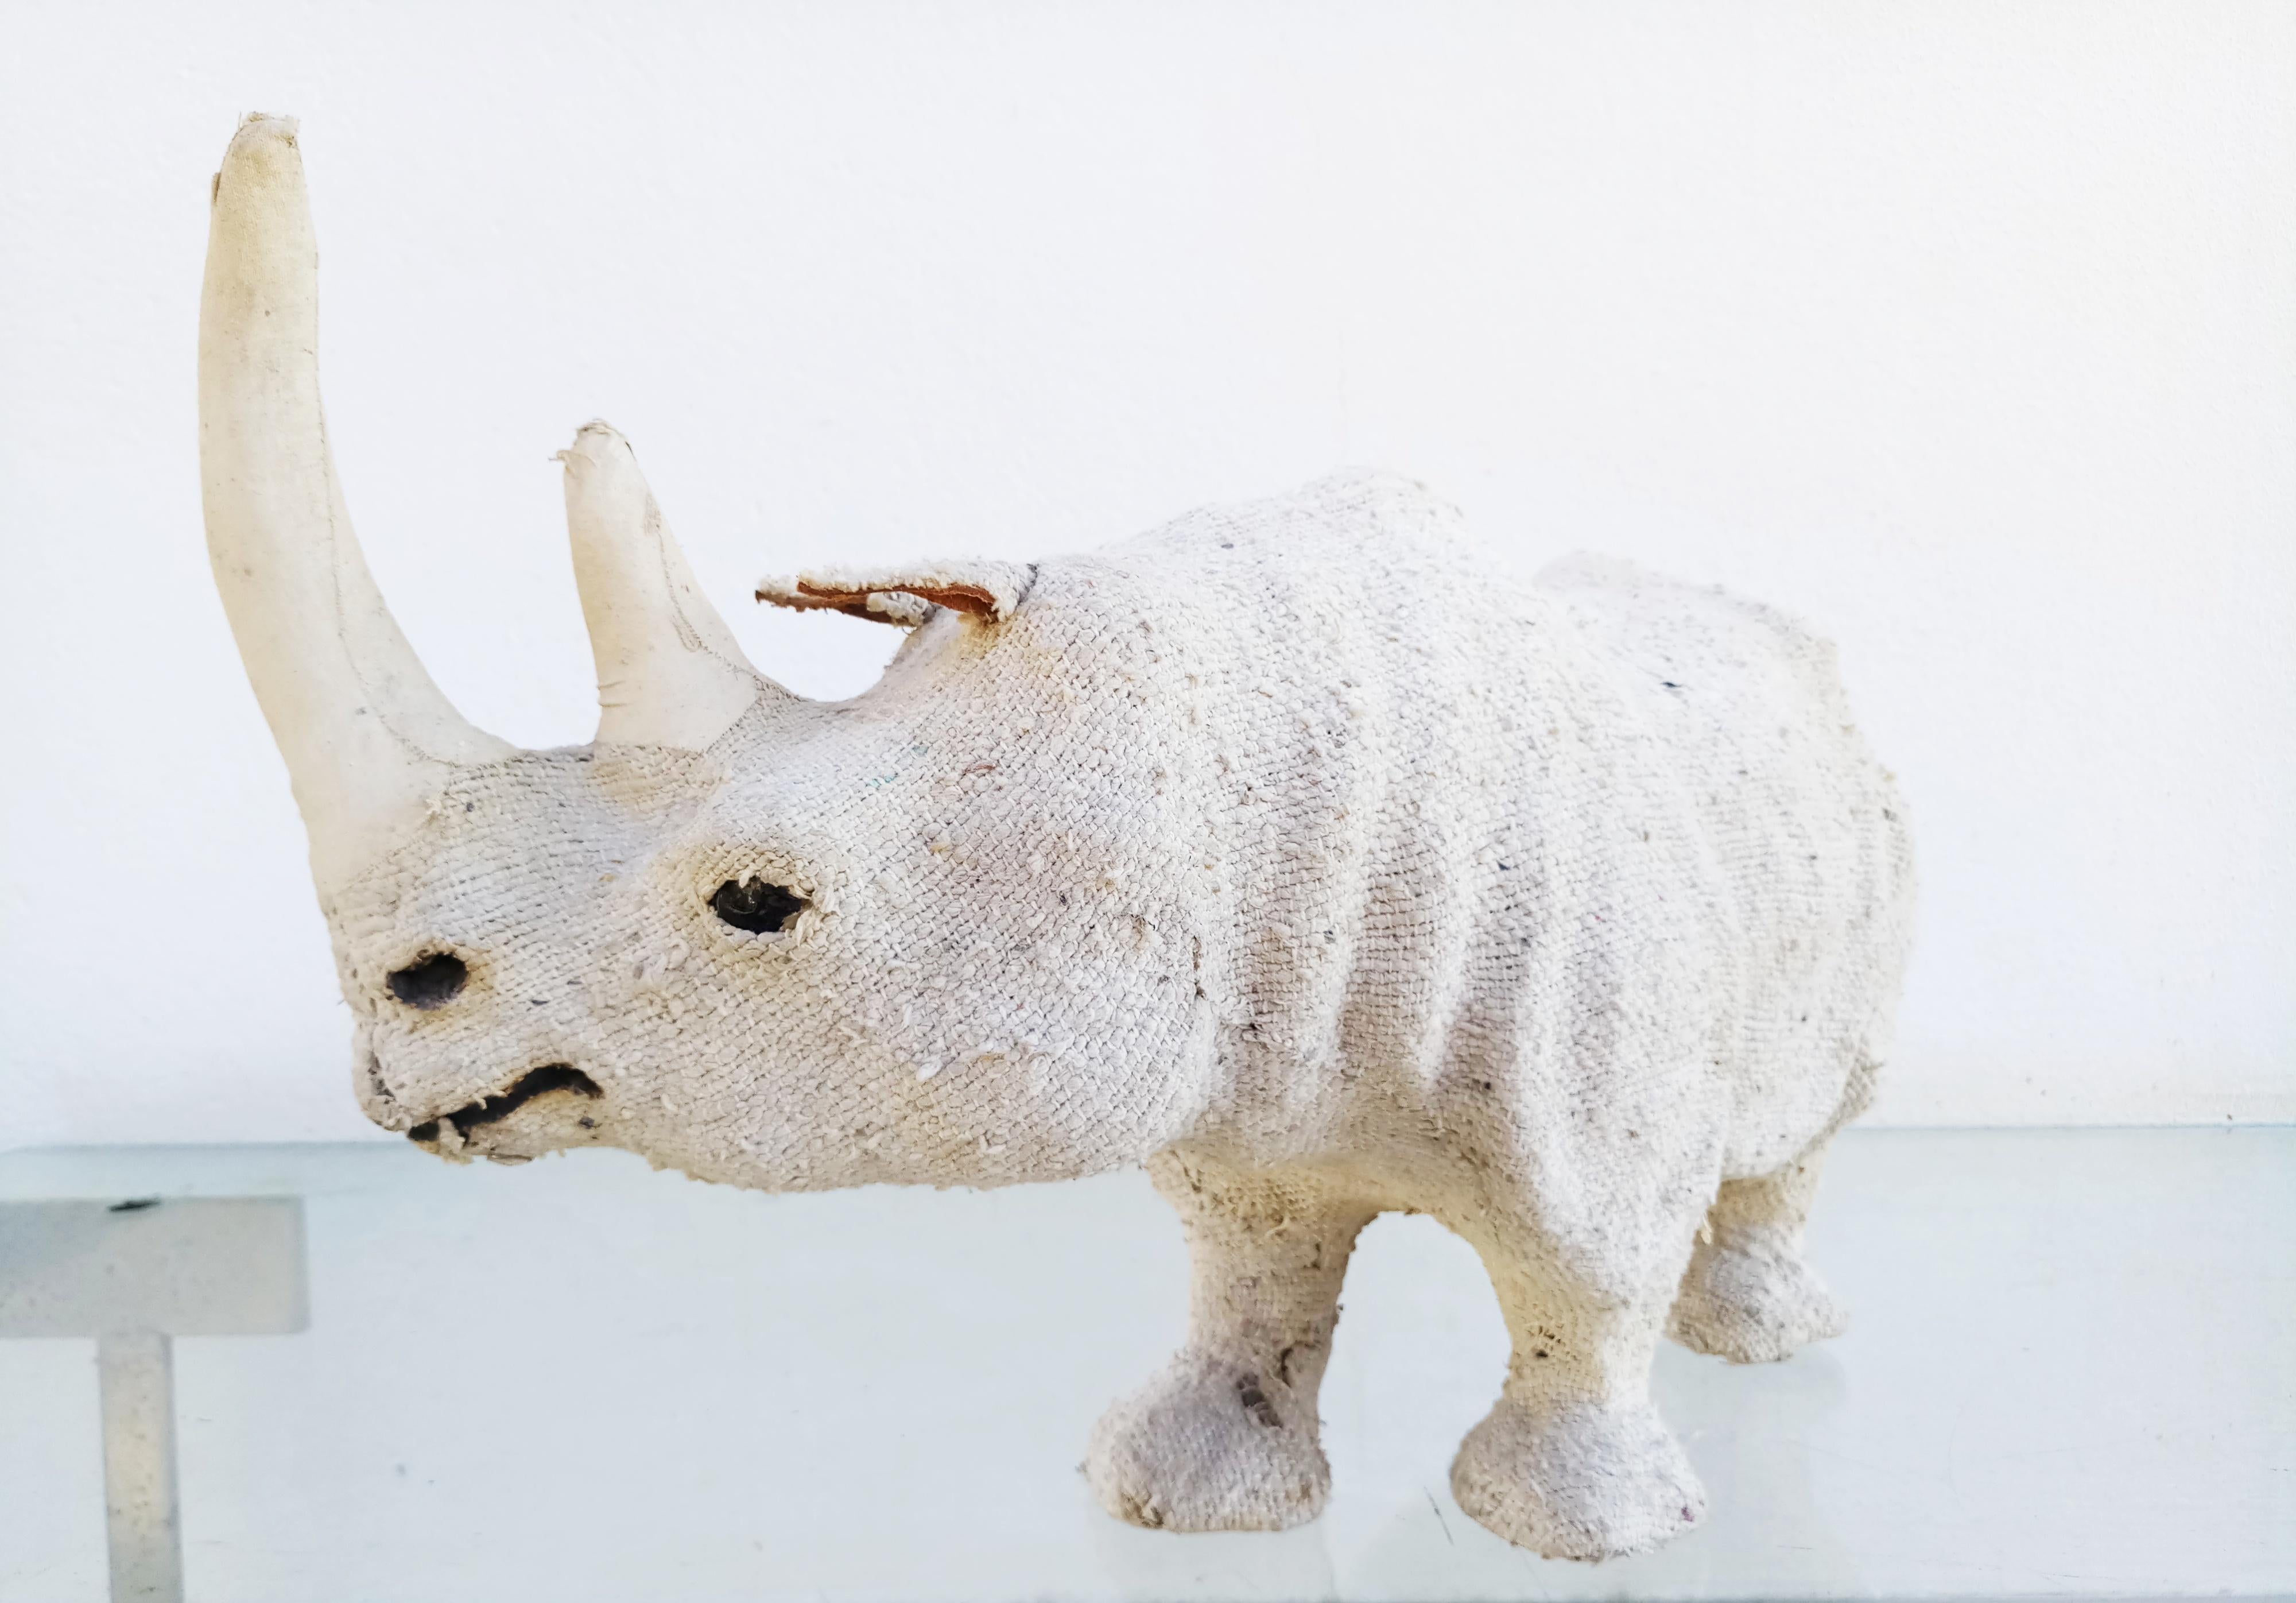 Belle et rare sculpture de rhinocéros en tissu de chanvre fabriquée dans les années 1950. Des yeux en verre, avec de fins détails.